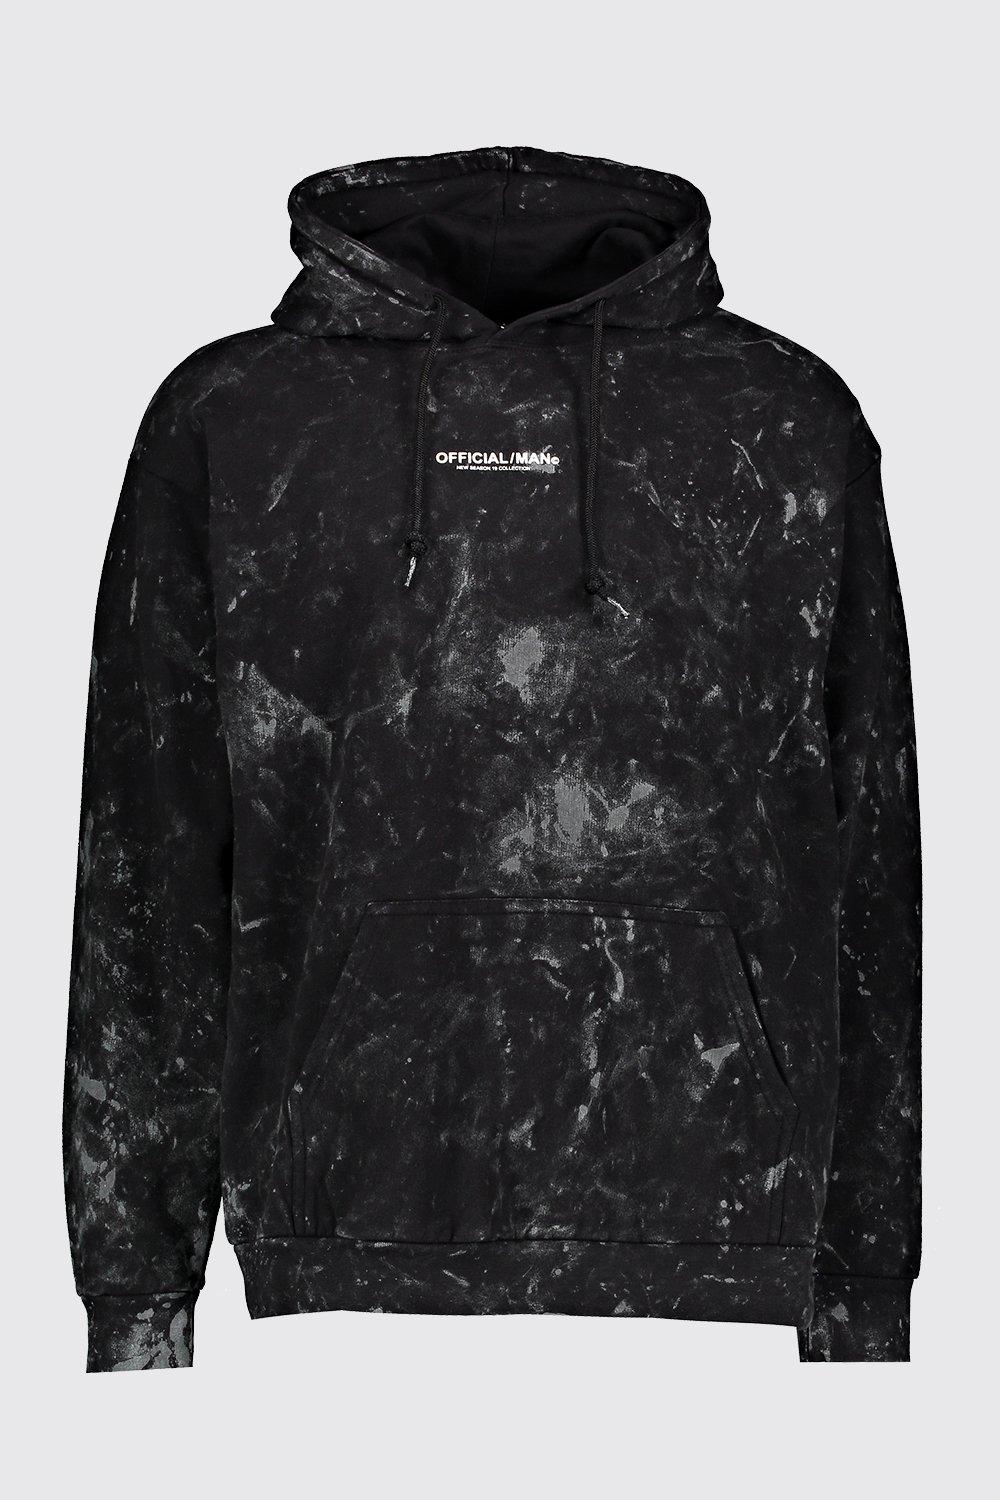 black acid wash hoodie